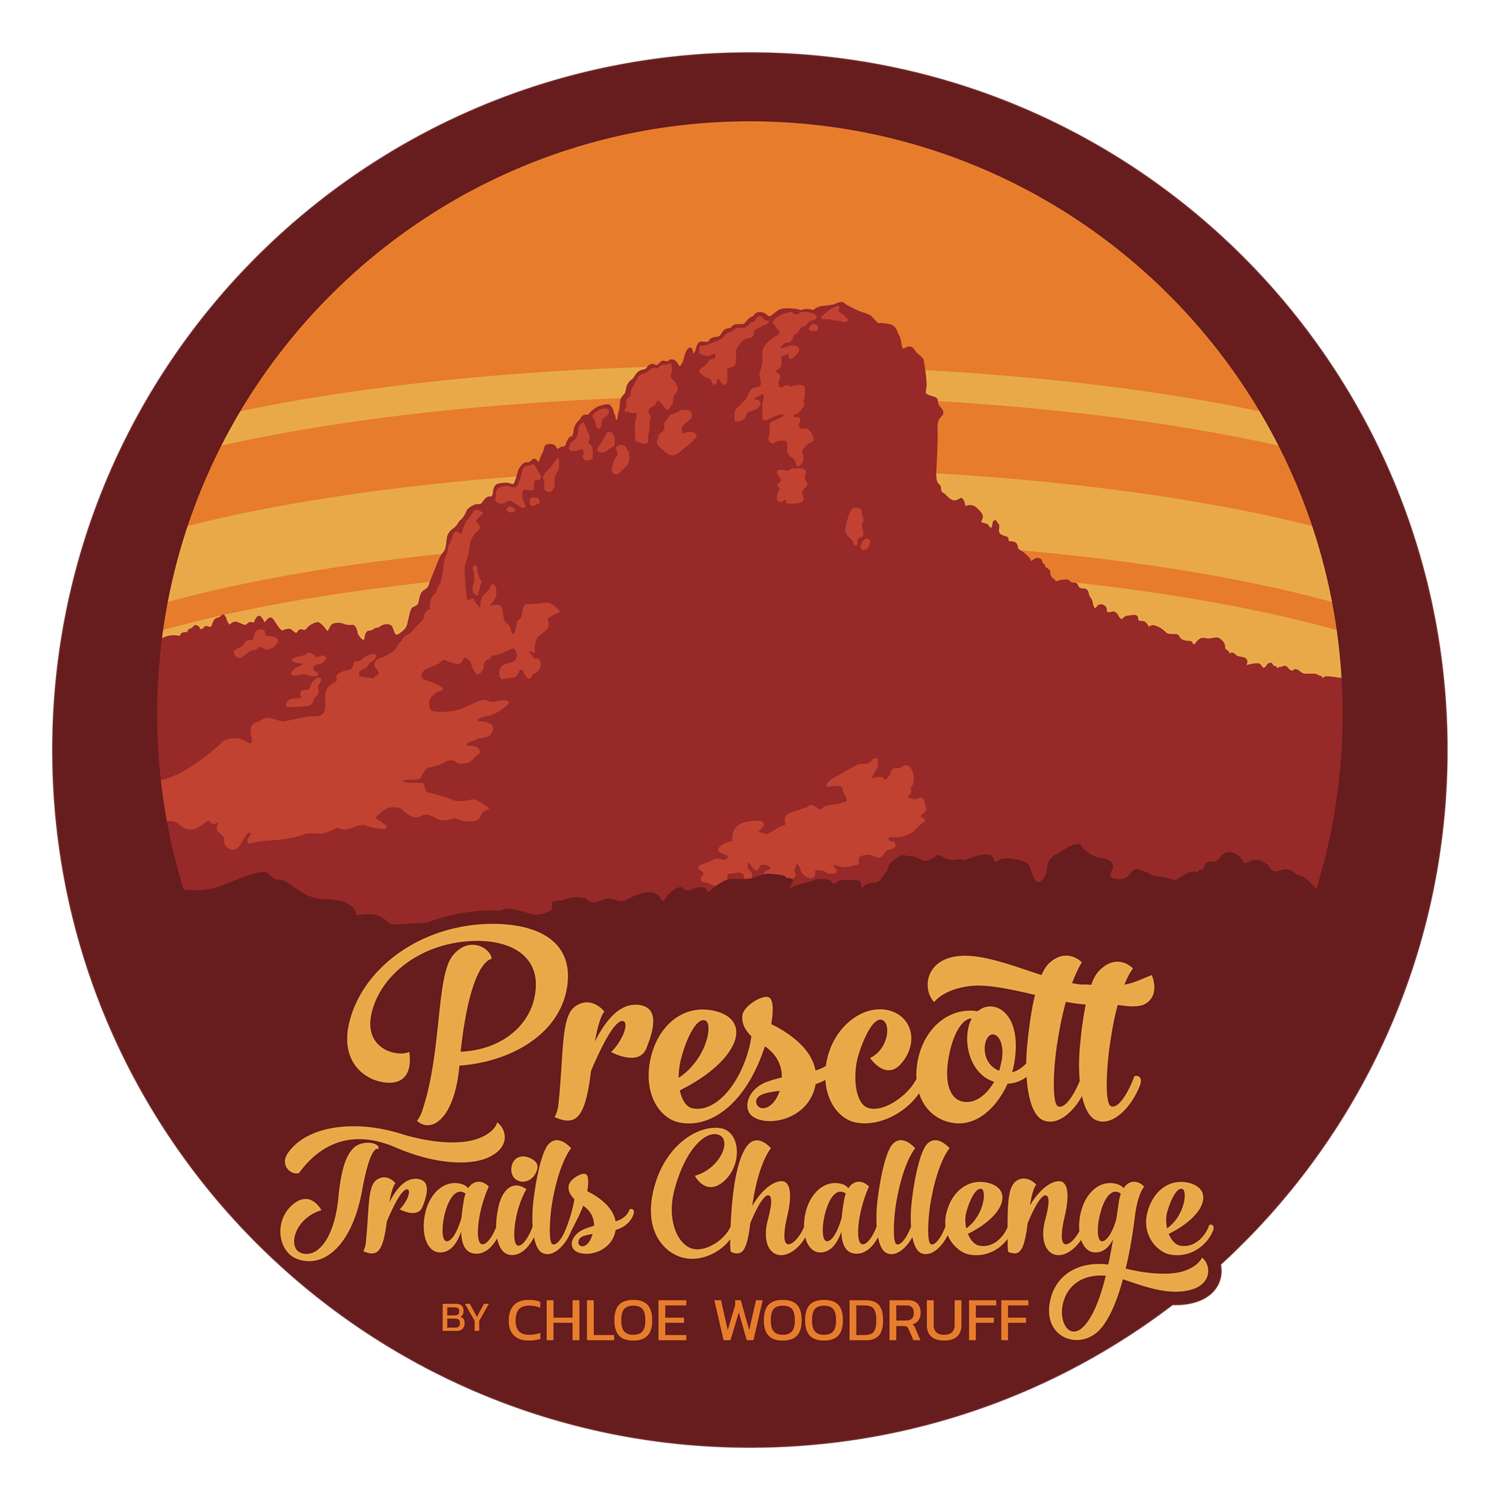 Prescott Trails Challenge